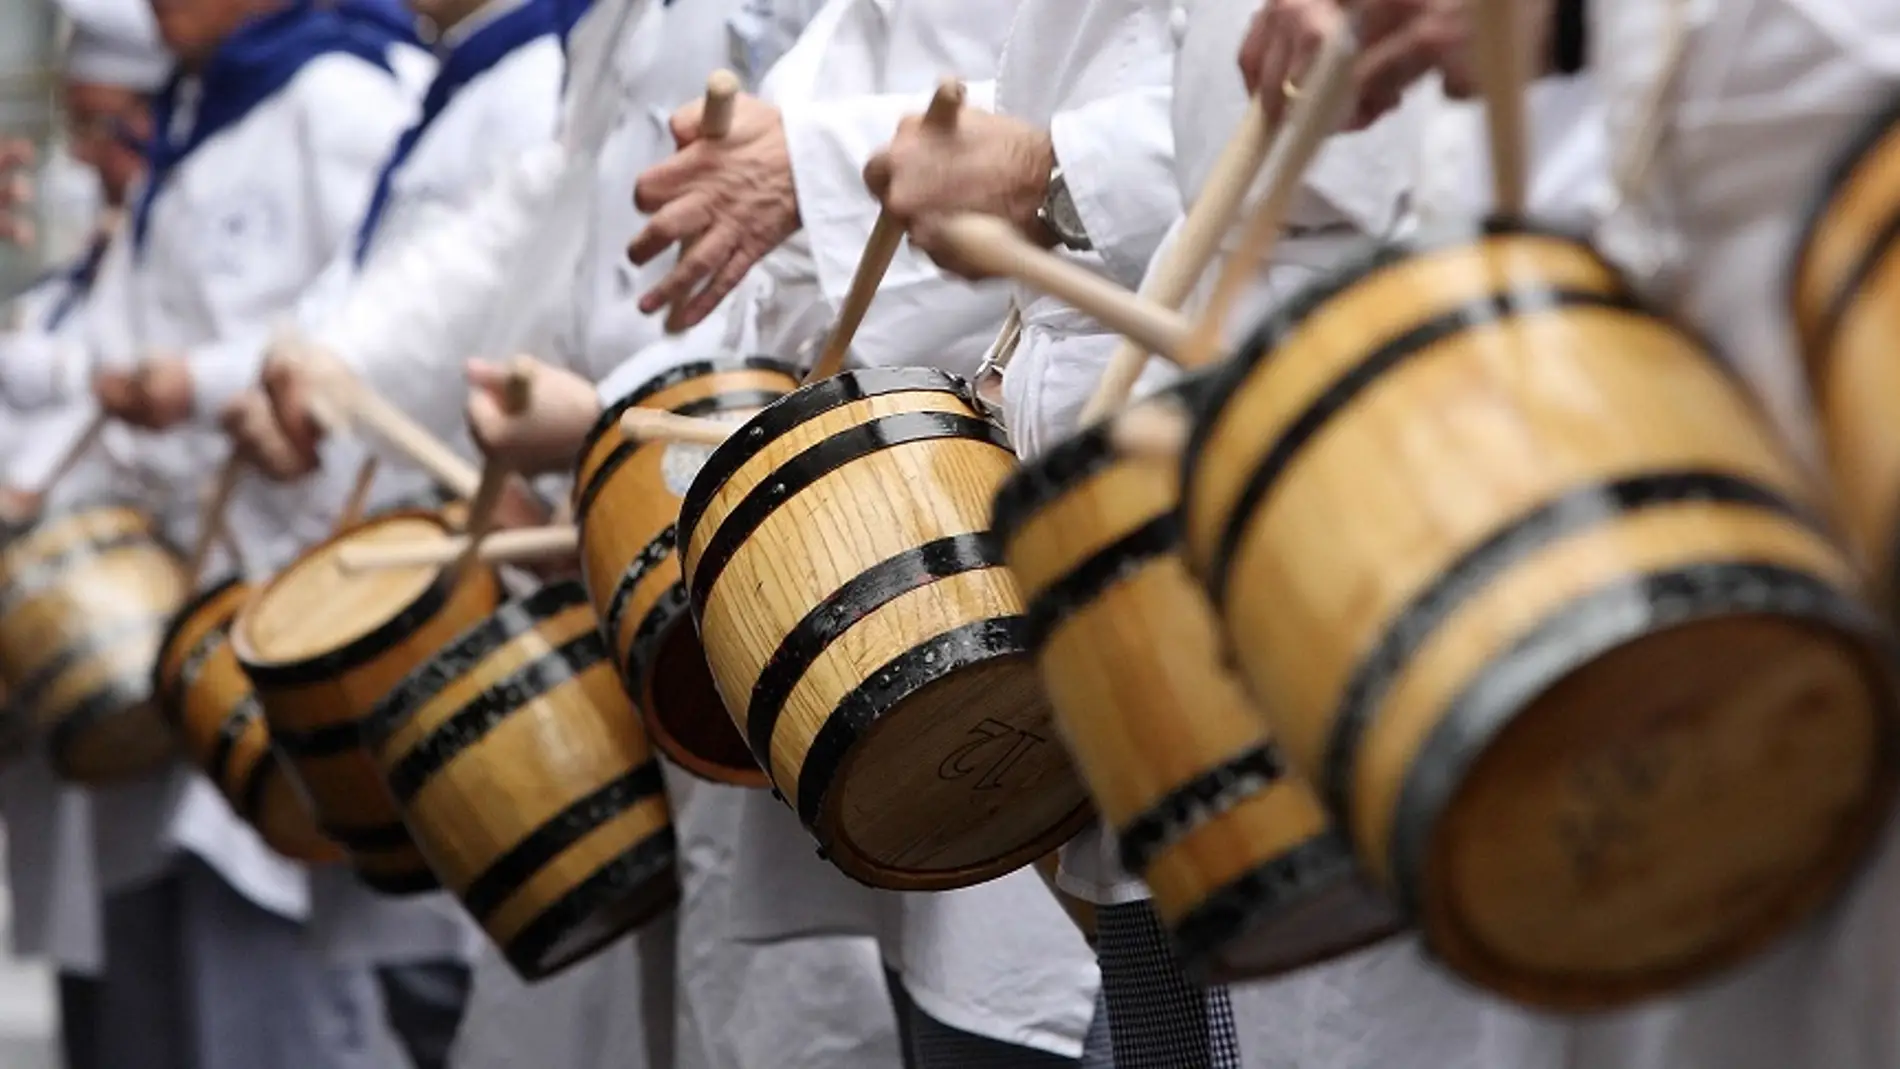 Tambores y barriles volverán a sonar en San Sebastián